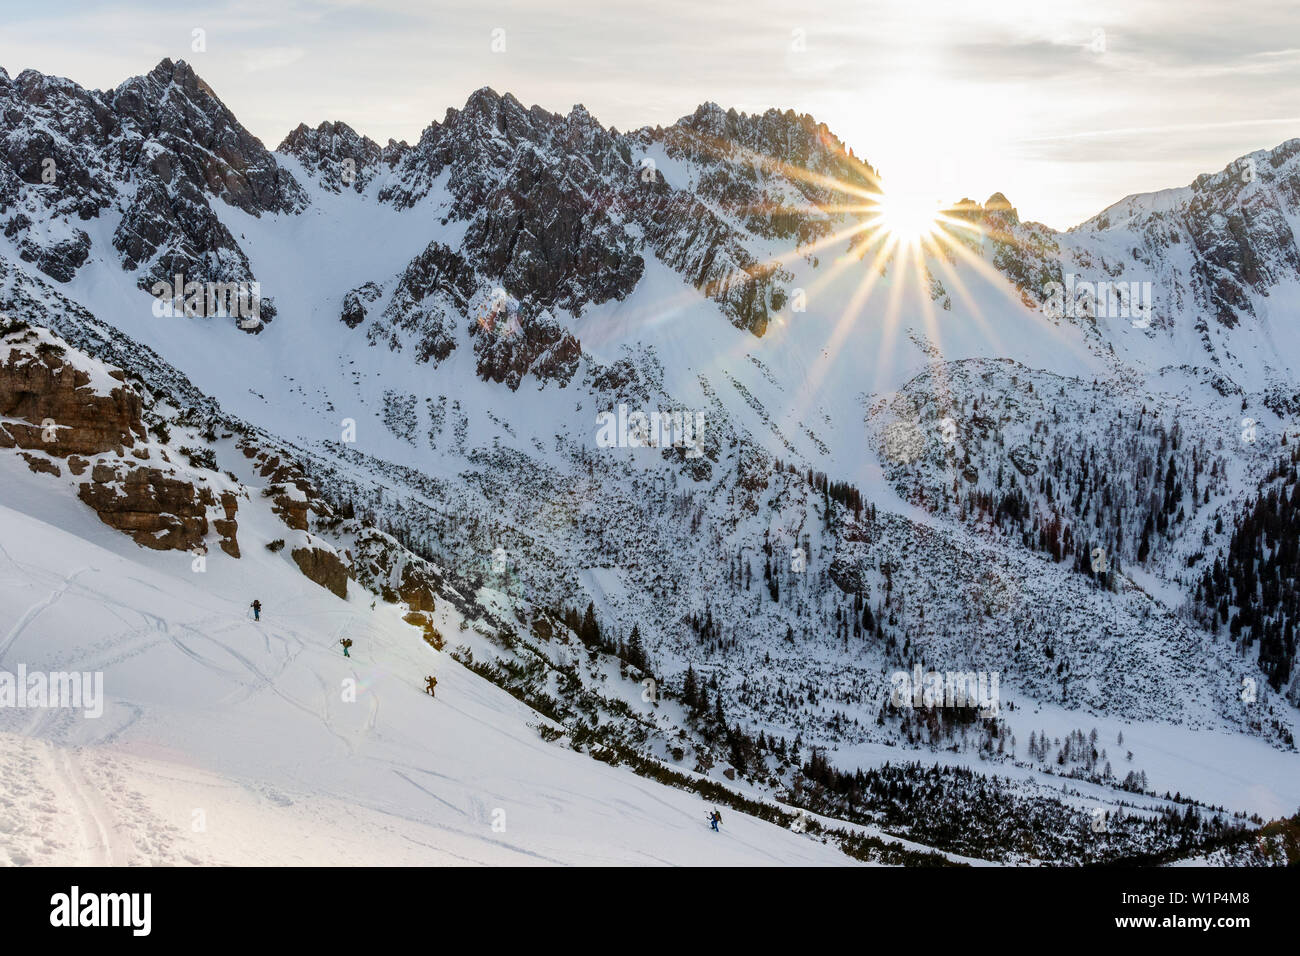 Gruppe von skitourengeher Aufsteigend einen Berghang auf Skiern, Scharnitz, Tirol, Österreich Stockfoto